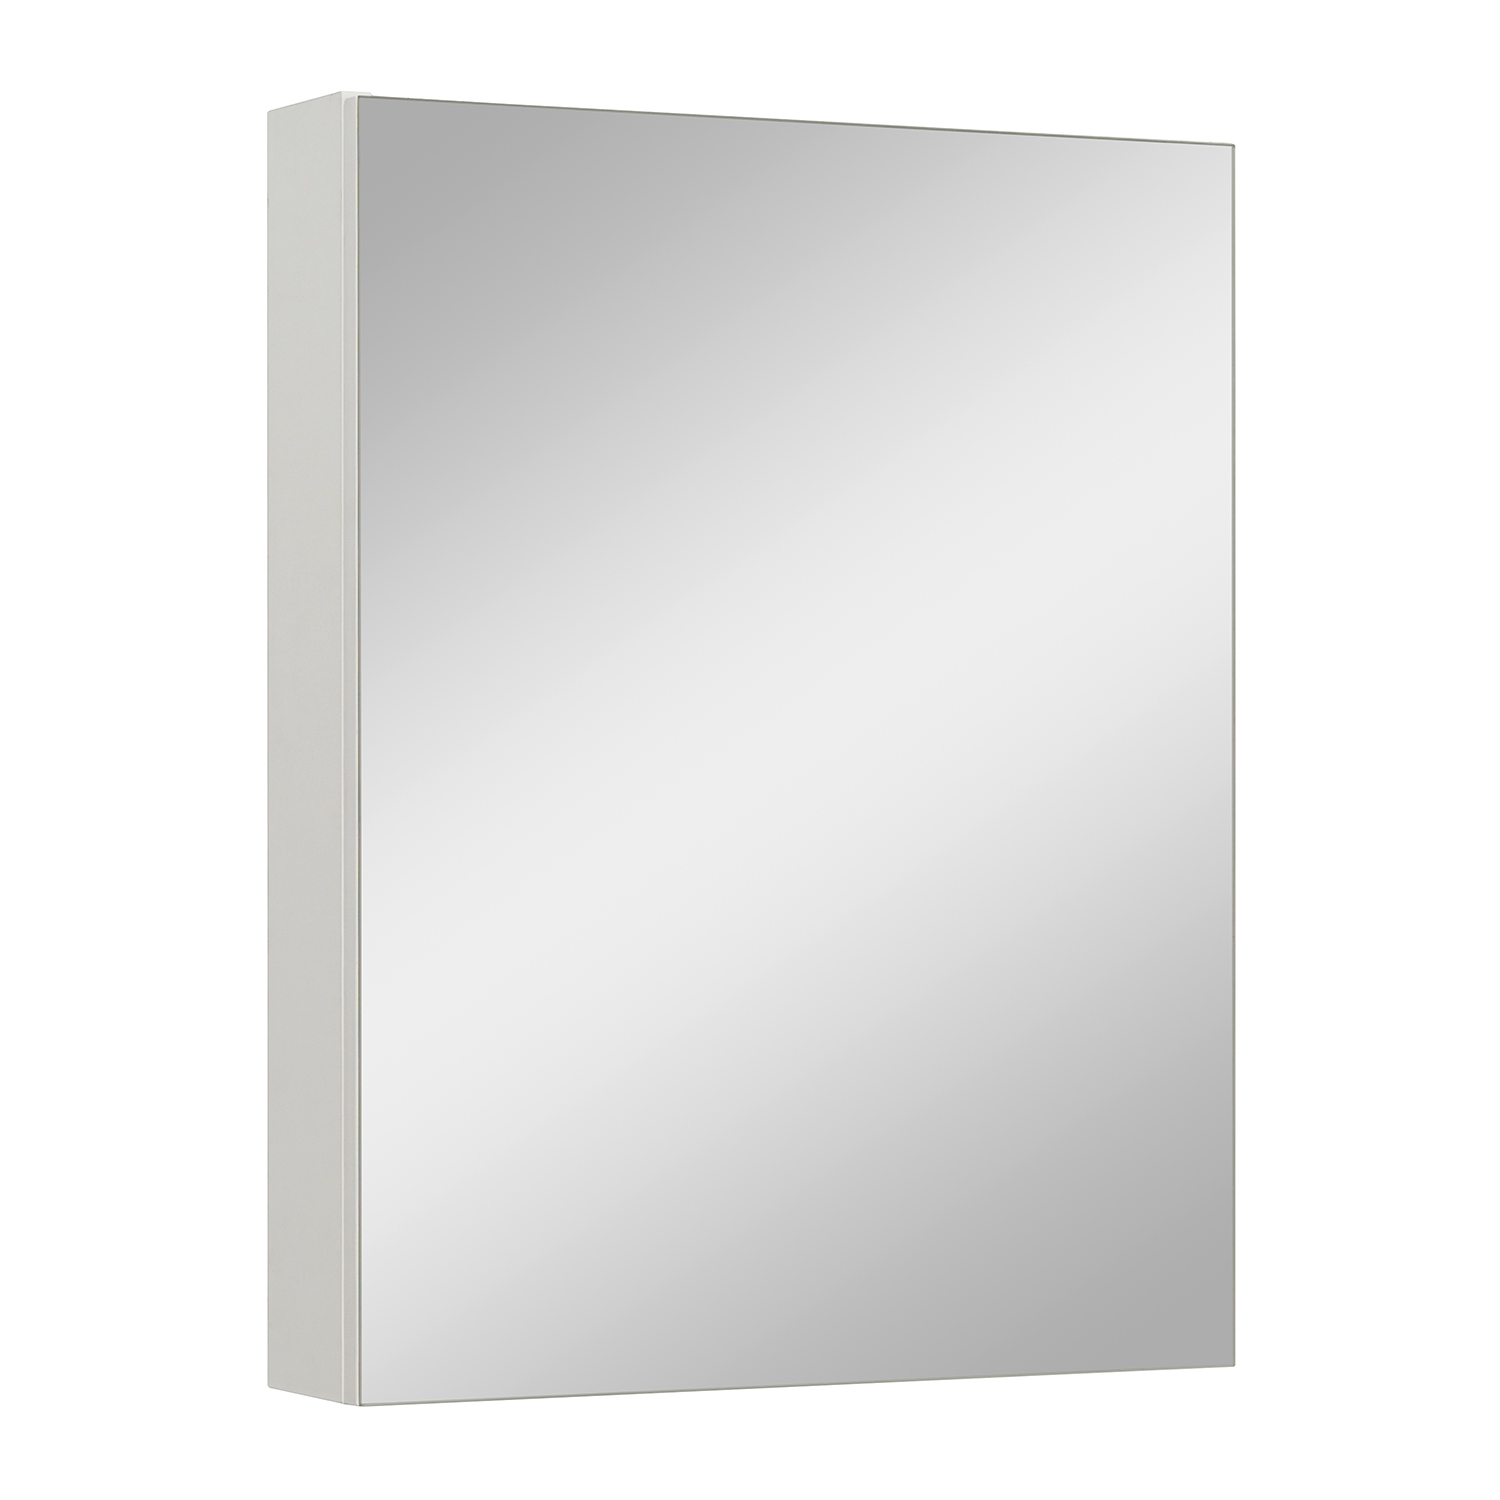 Зеркало в ванную 50 см. Шкаф зеркальный «Паола» 50 см цвет белый. Шкаф-зеркало Paola 60. Зеркало-шкаф Runo. Зеркало мод 053е (500*600).